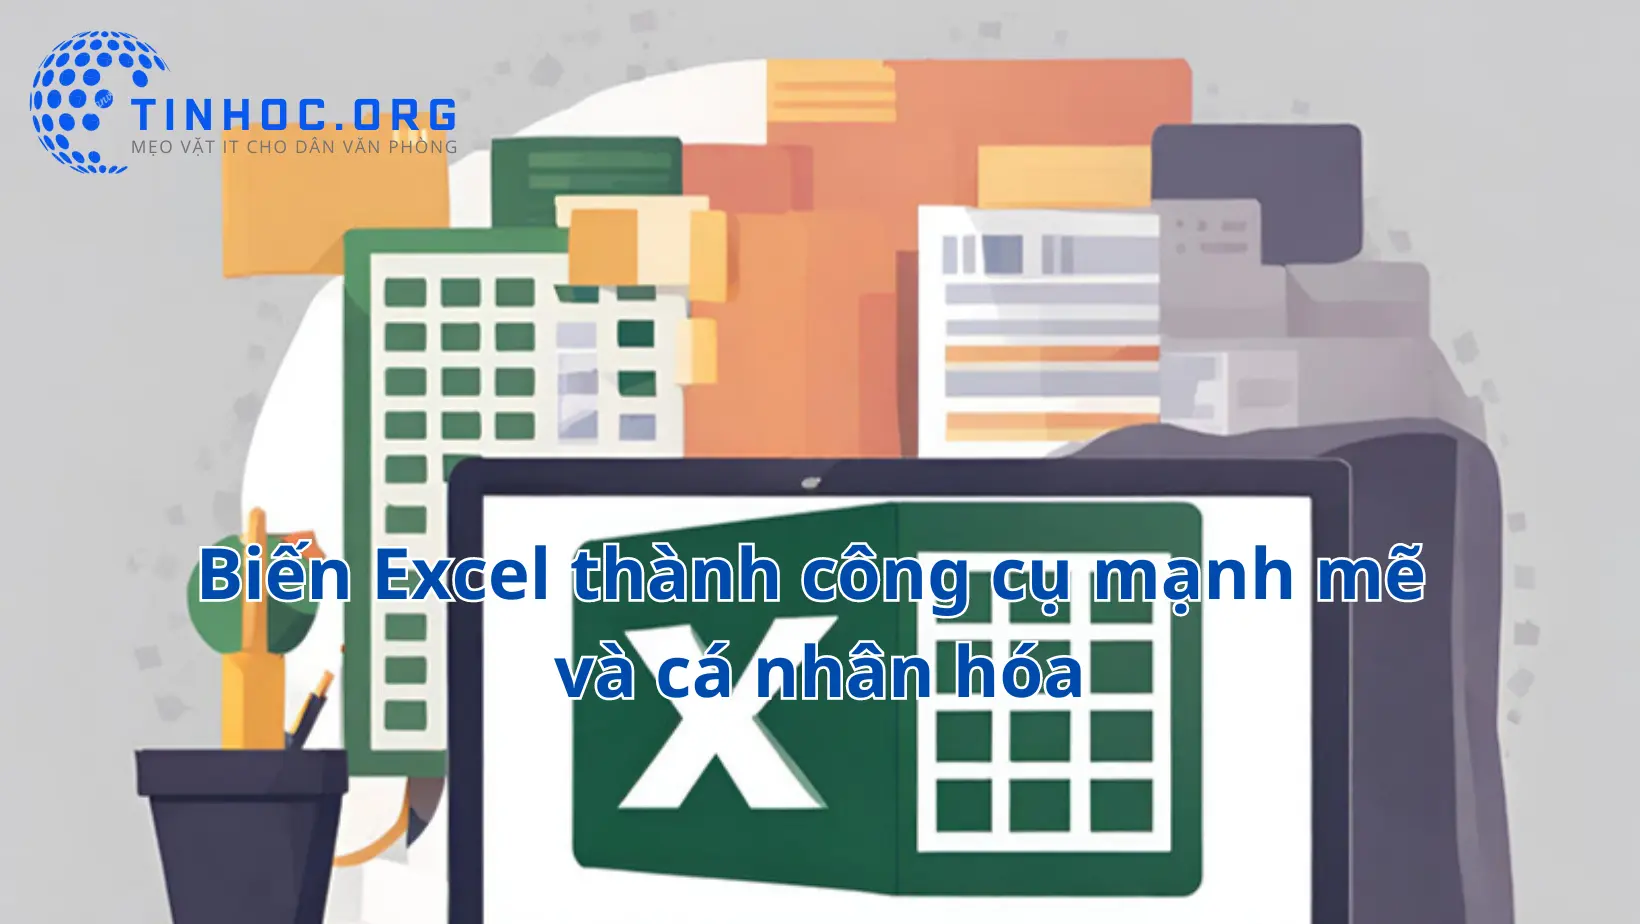 Biến Excel thành công cụ mạnh mẽ và cá nhân hóa